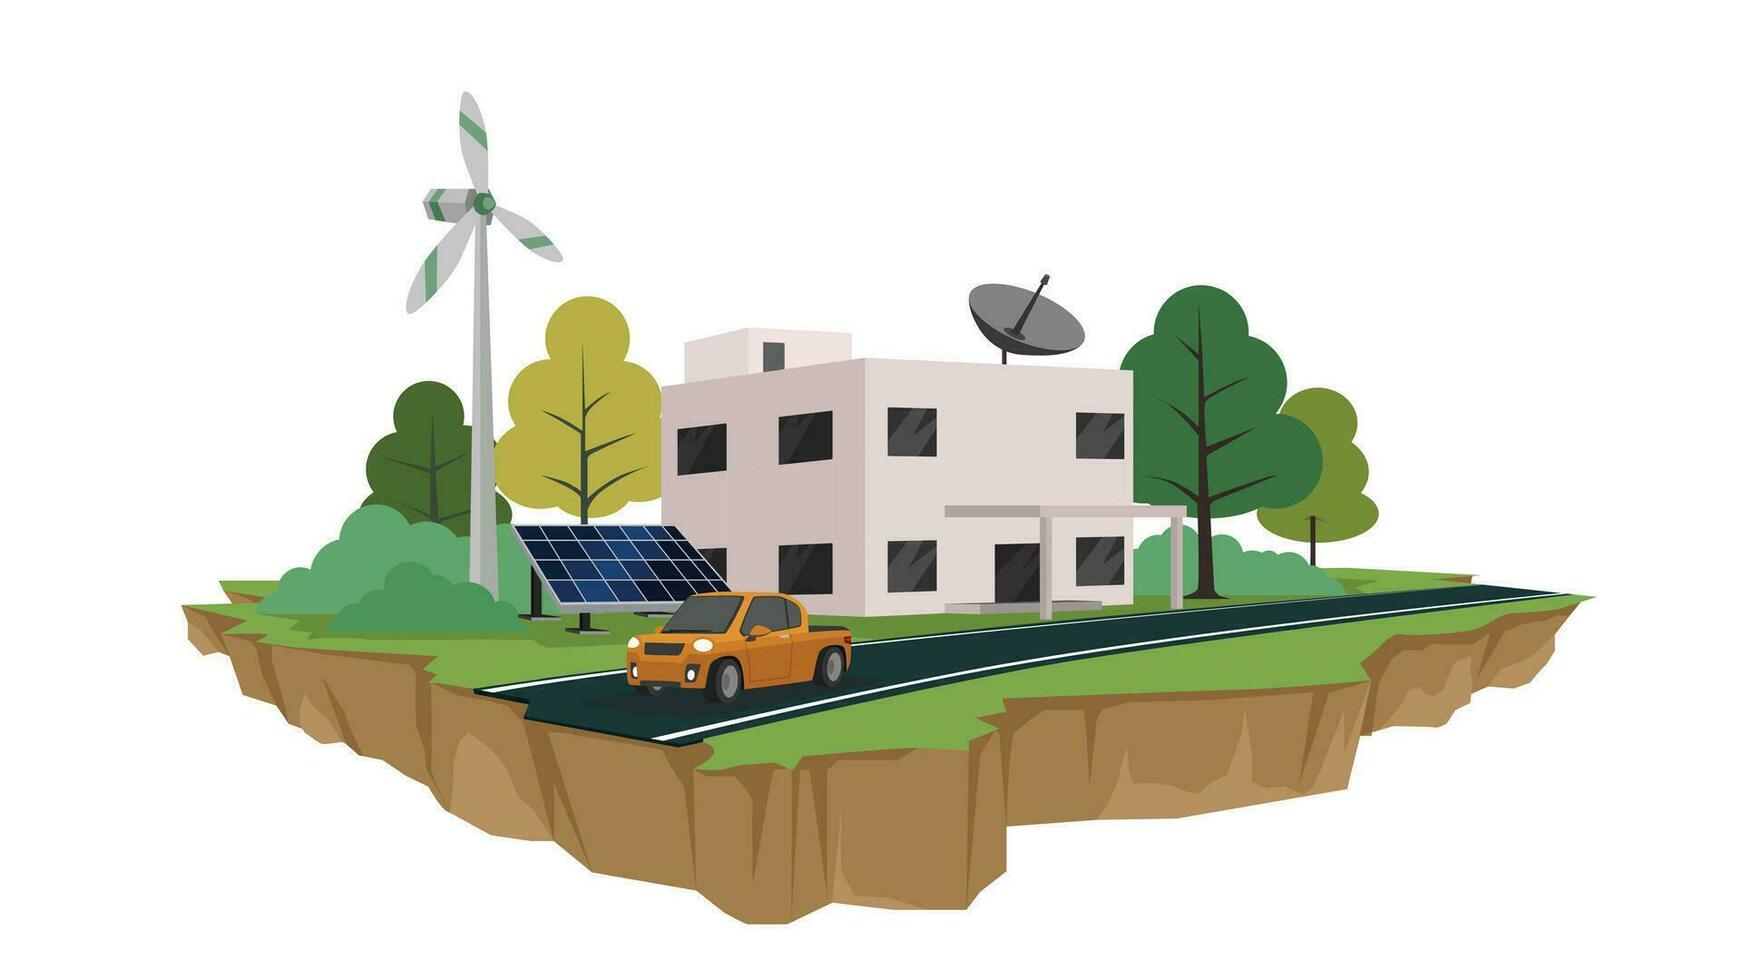 vektor eller illustration av eco begrepp. stad byggnad med sol- panel och väderkvarn för energi sparande. med träd och grön gräs för bakgrund. främre jord ha asfalt väg och bil. ö av eko.